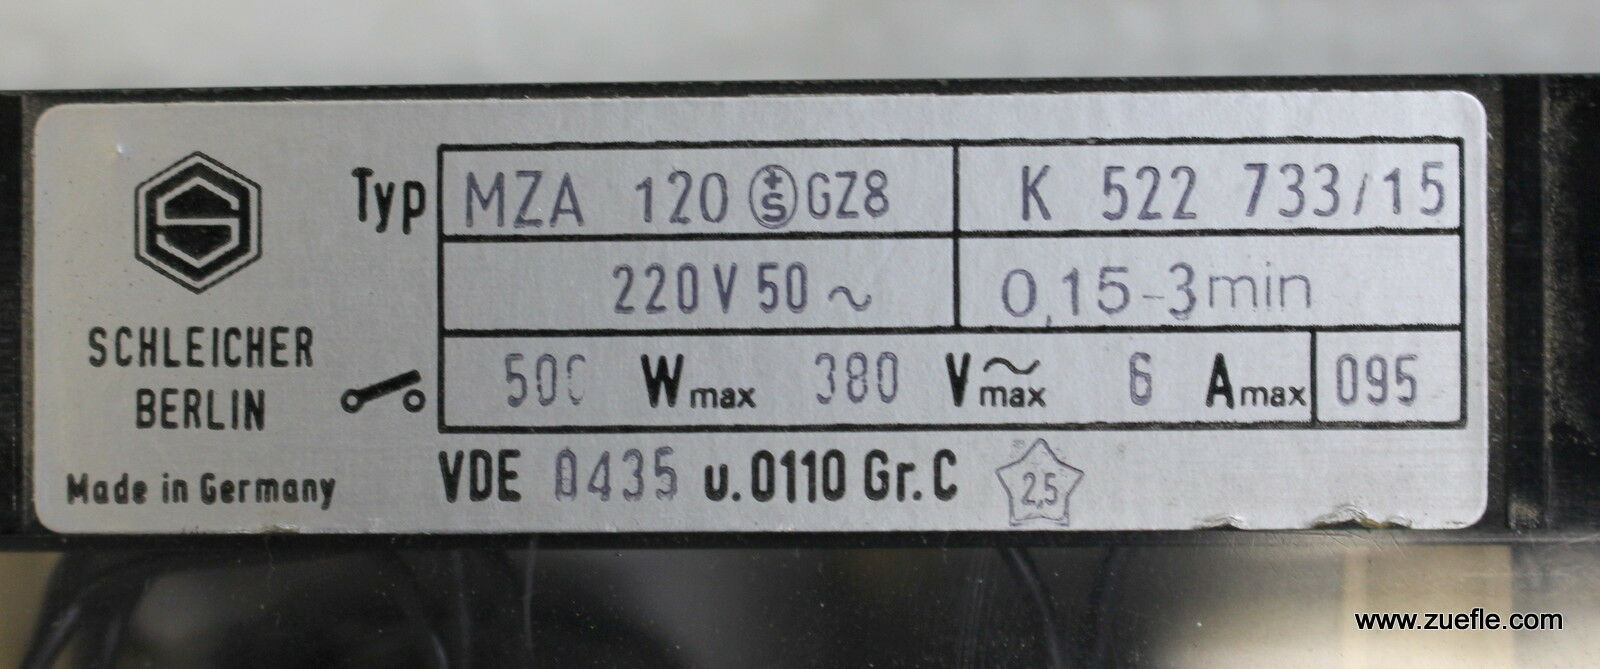 SCHLEICHER Zeitrelais MZA 120 GZ8 220VAC 50Hz 0,15-3min 500W 380VACmax. 6Amax